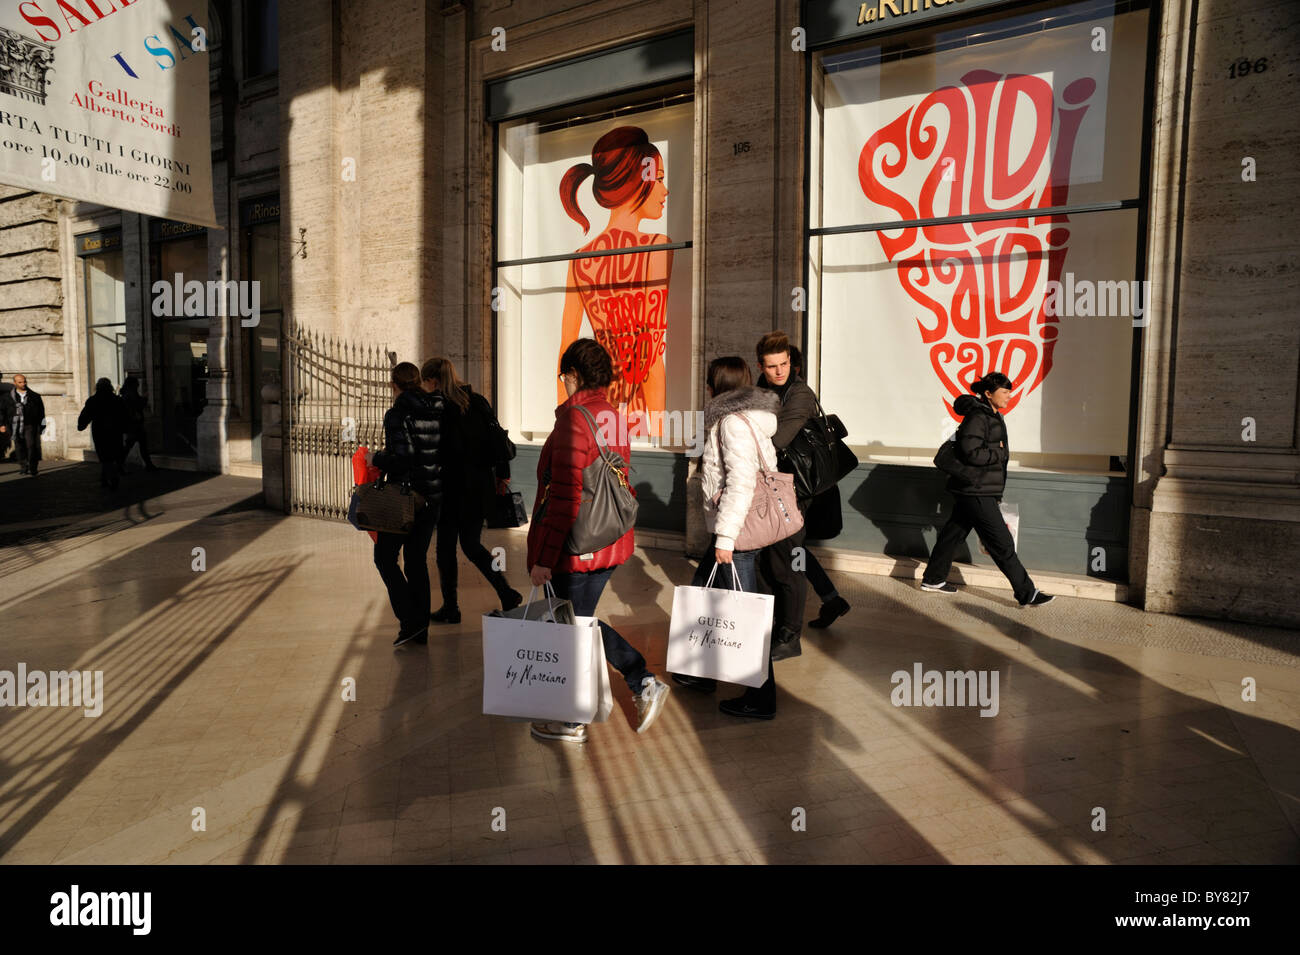 Italia, Roma, Galleria Alberto Sordi, Galleria colonna, vetrina, vendite, gente che fa shopping Foto Stock